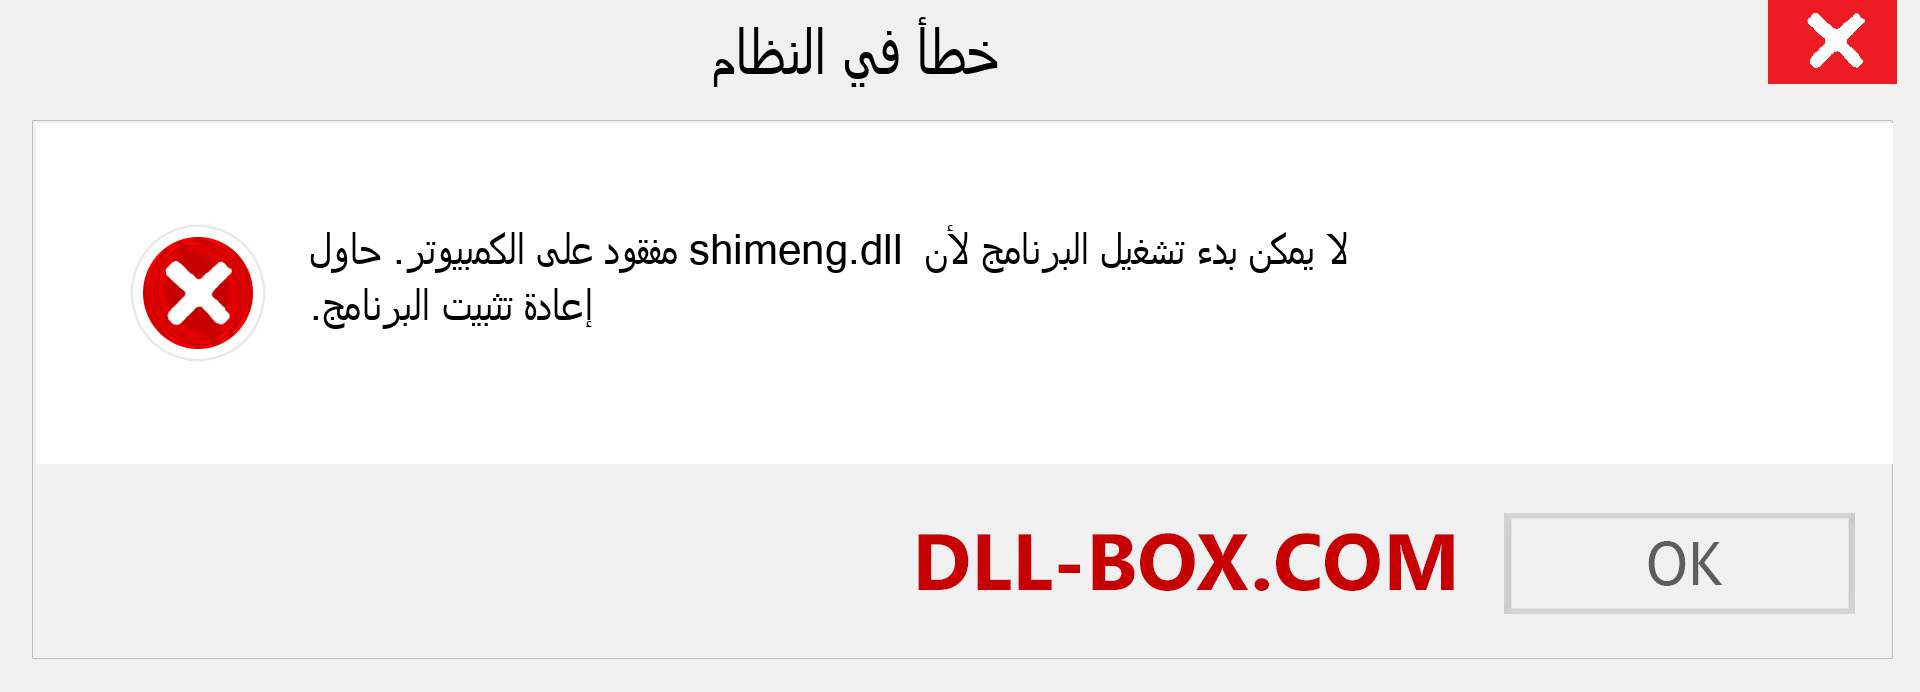 ملف shimeng.dll مفقود ؟. التنزيل لنظام التشغيل Windows 7 و 8 و 10 - إصلاح خطأ shimeng dll المفقود على Windows والصور والصور